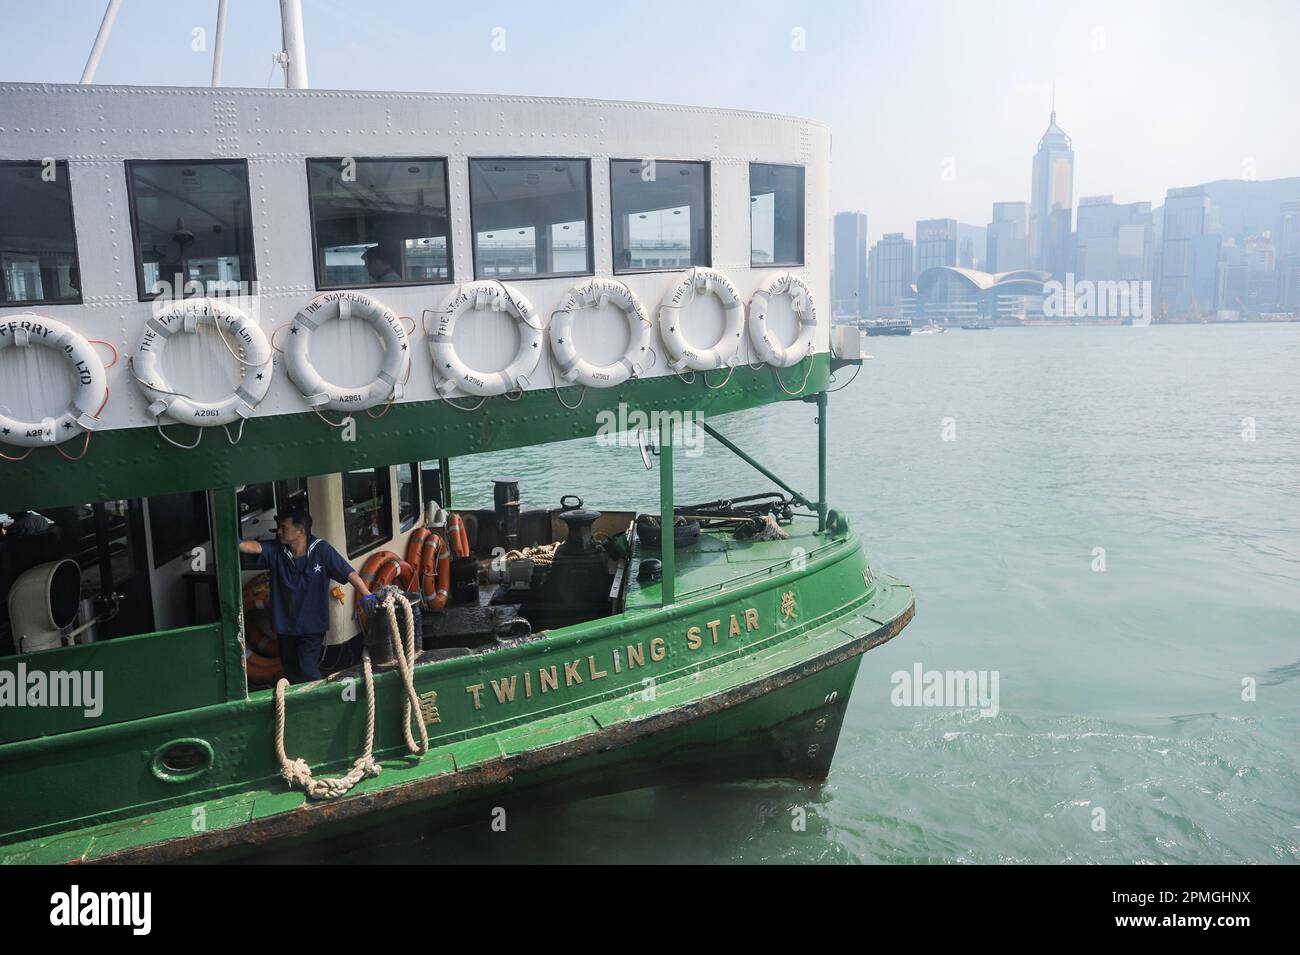 08.10.2014, Hong Kong, SAR, Chine, Asie - Un ferry pour passagers de la Star Ferry Company nommé Twinkling Star docks à l'embarcadère de Kowloon. Banque D'Images